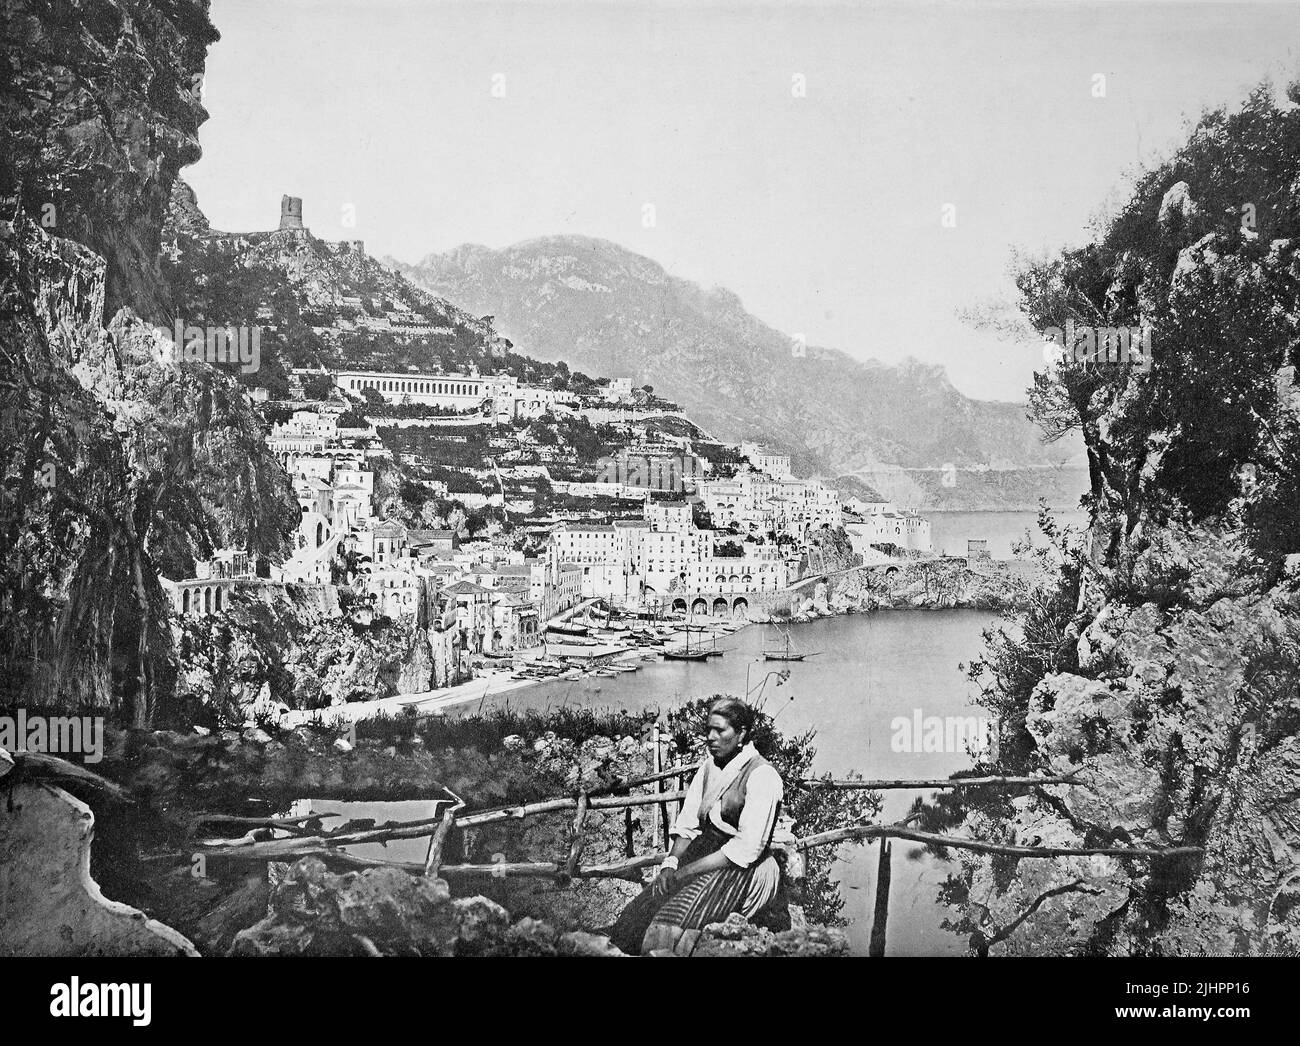 Historisches Foto (ca 1880) von Amalfi, Kampanien, Italien / Historisches Foto von Amalfi, Kampanien, Italien, Historisch, digital restaurierte Produktion einer Originalvorlage aus dem 19. Jahrhundert, das Originaldatum nicht bekannt, Stockfoto